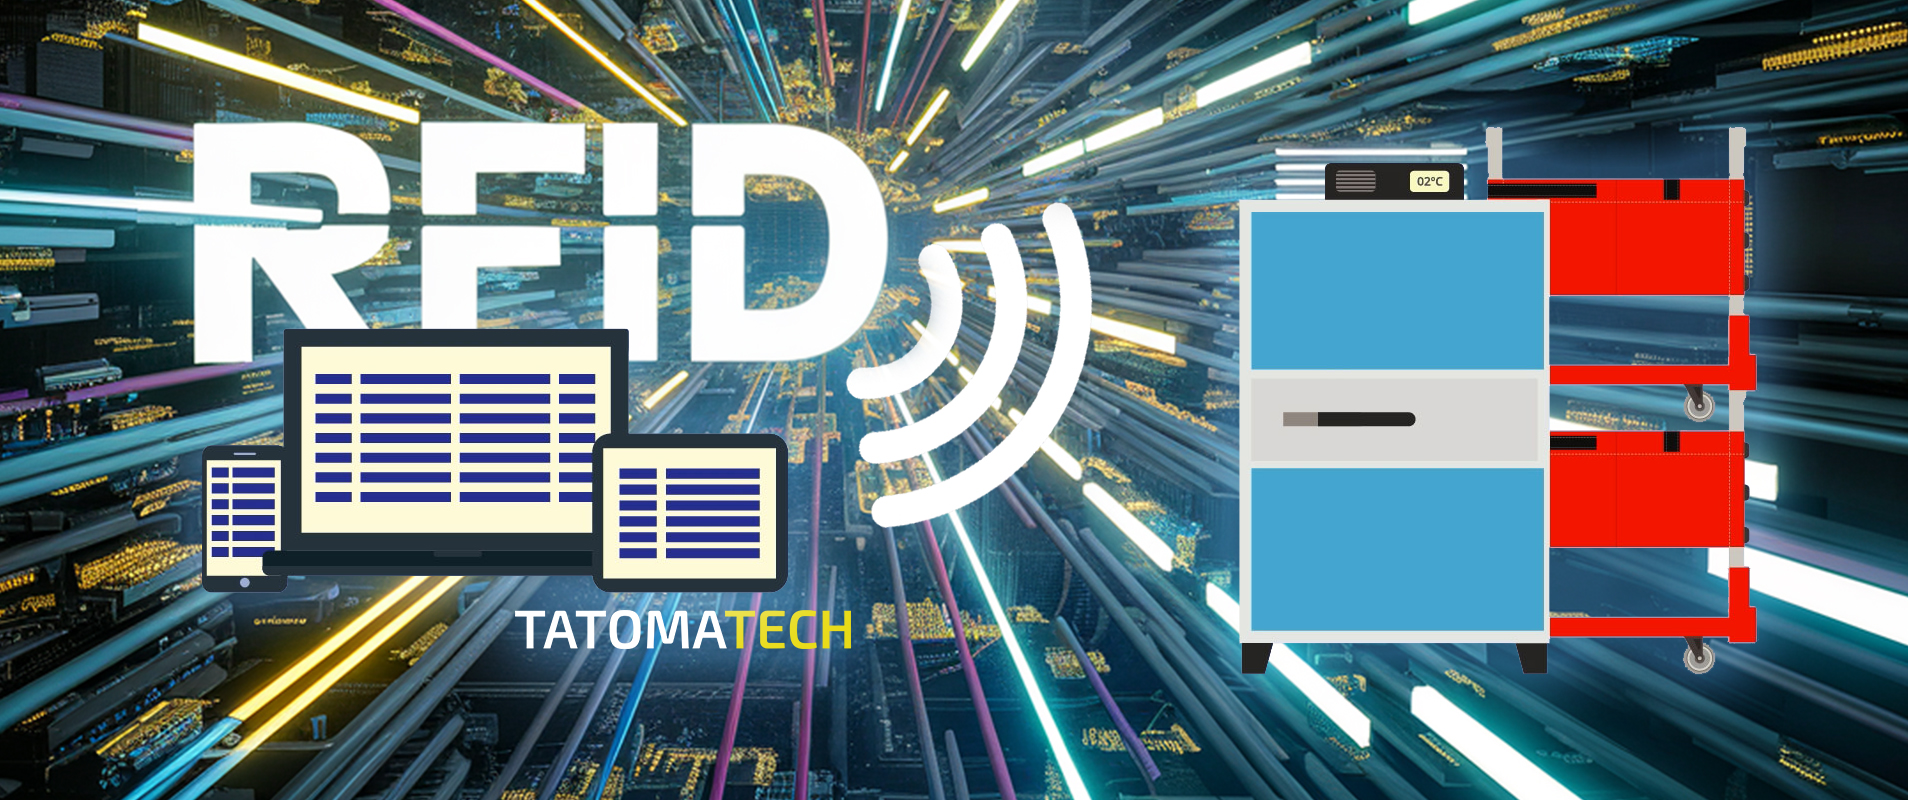 ¿Cómo puede el RFID impulsar el éxito de tu empresa?